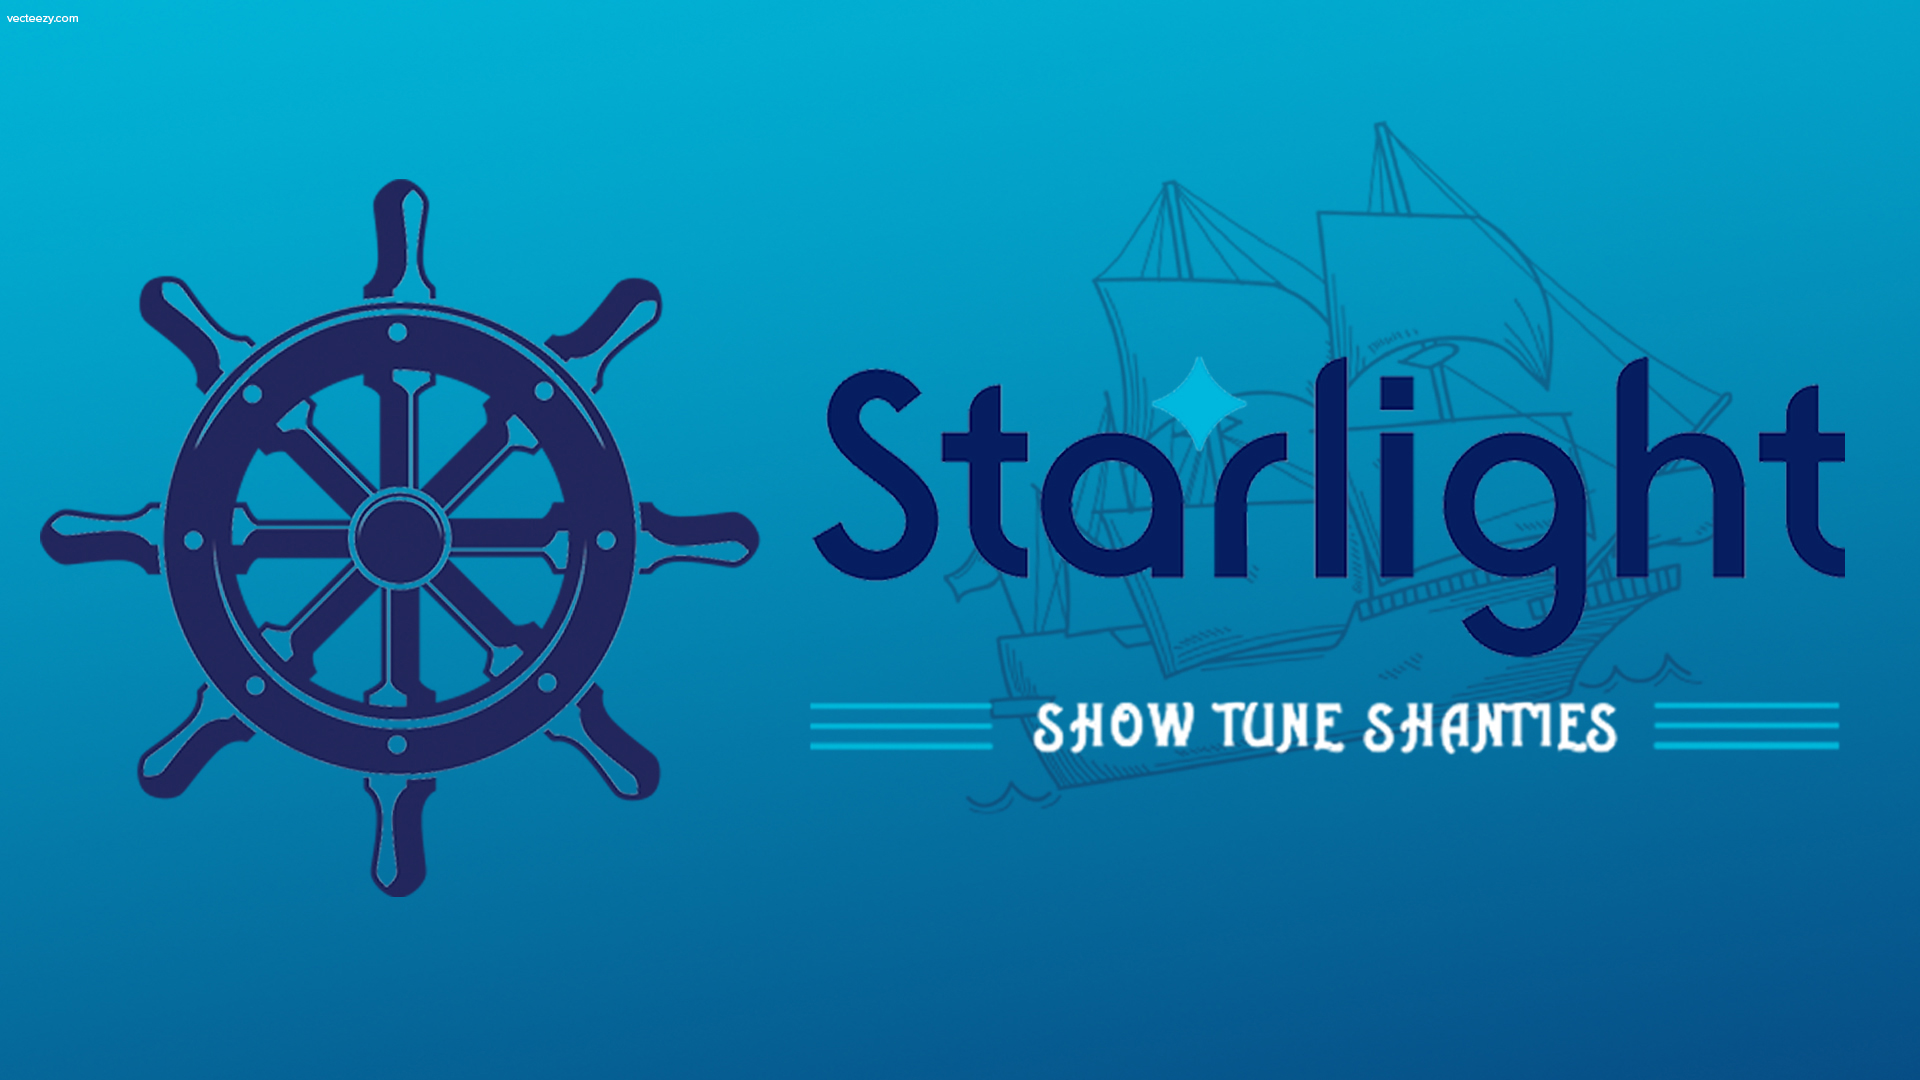 Starlight Joins the Sea Shanty Trend on TikTok